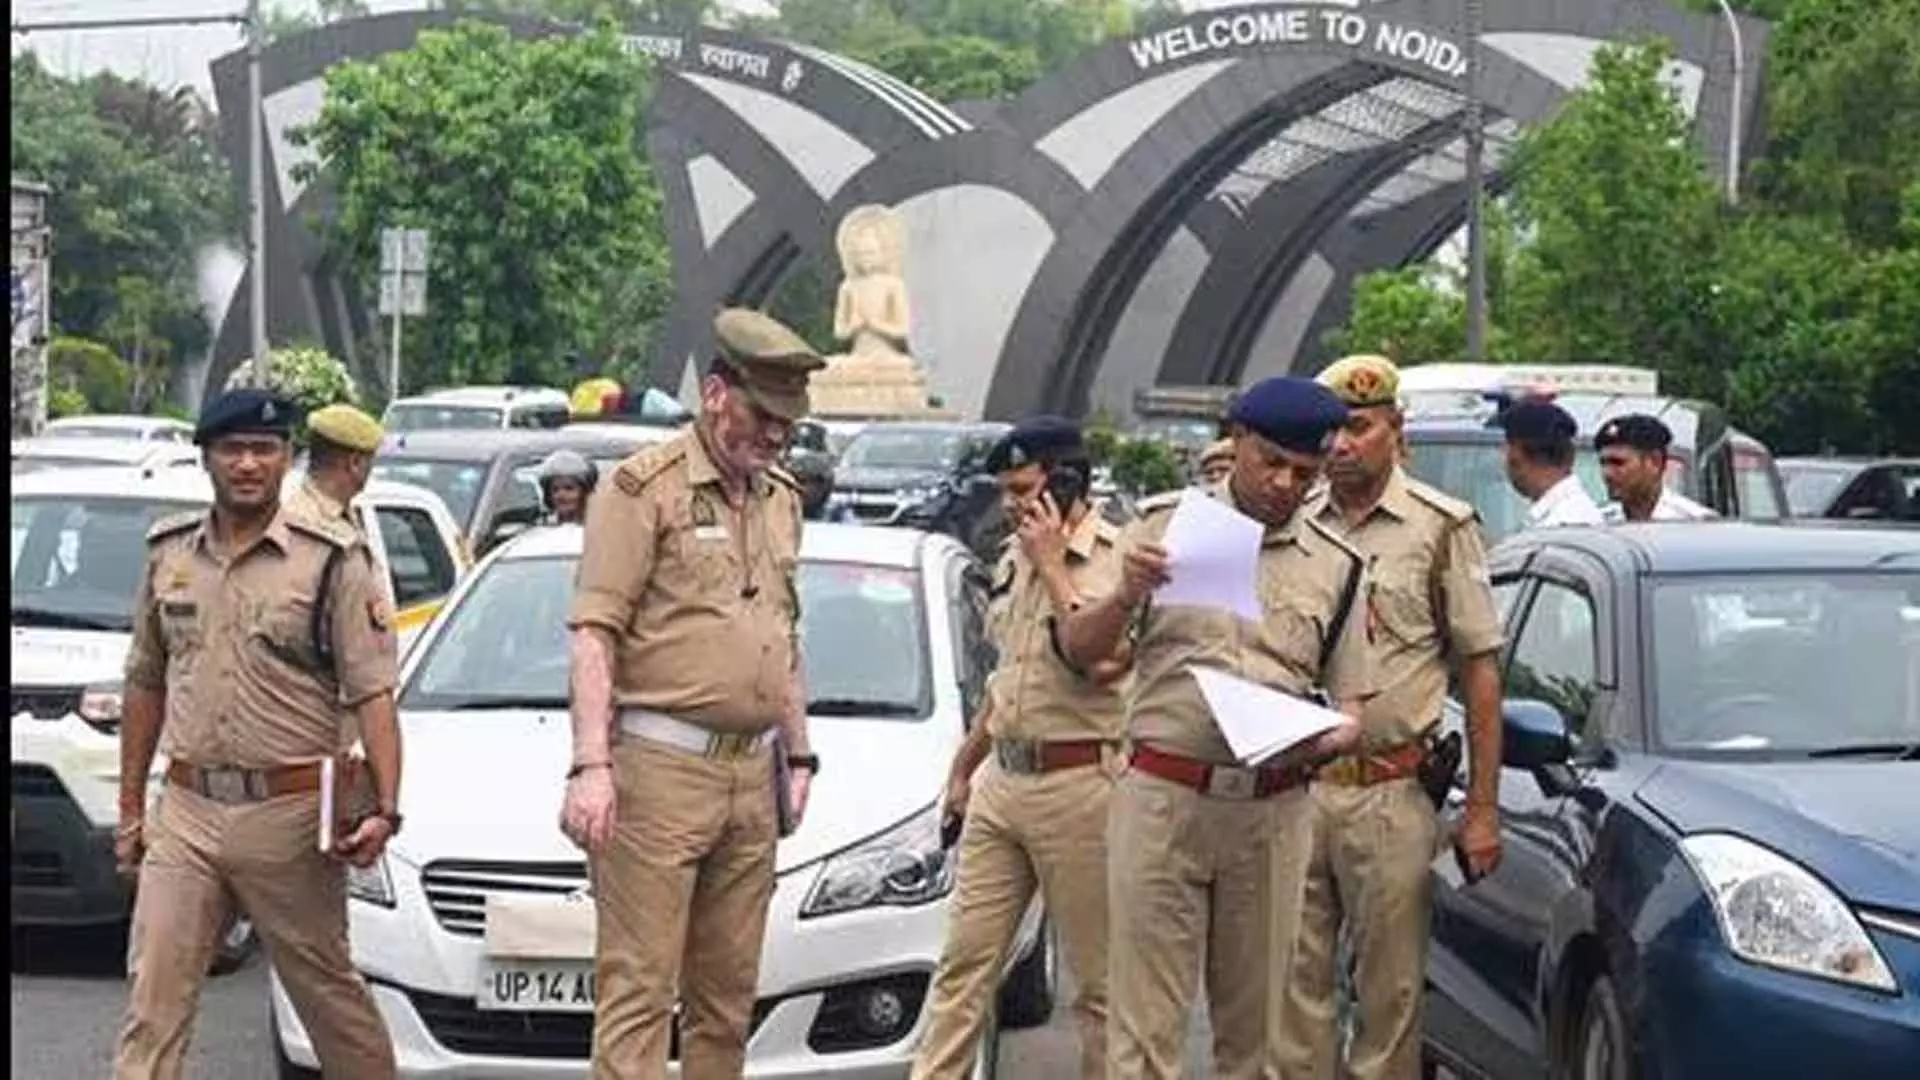 NOIDA: नोएडा ट्रैफिक पुलिस ने कांवड़ यात्रियों के लिए यातायात योजना बनाई